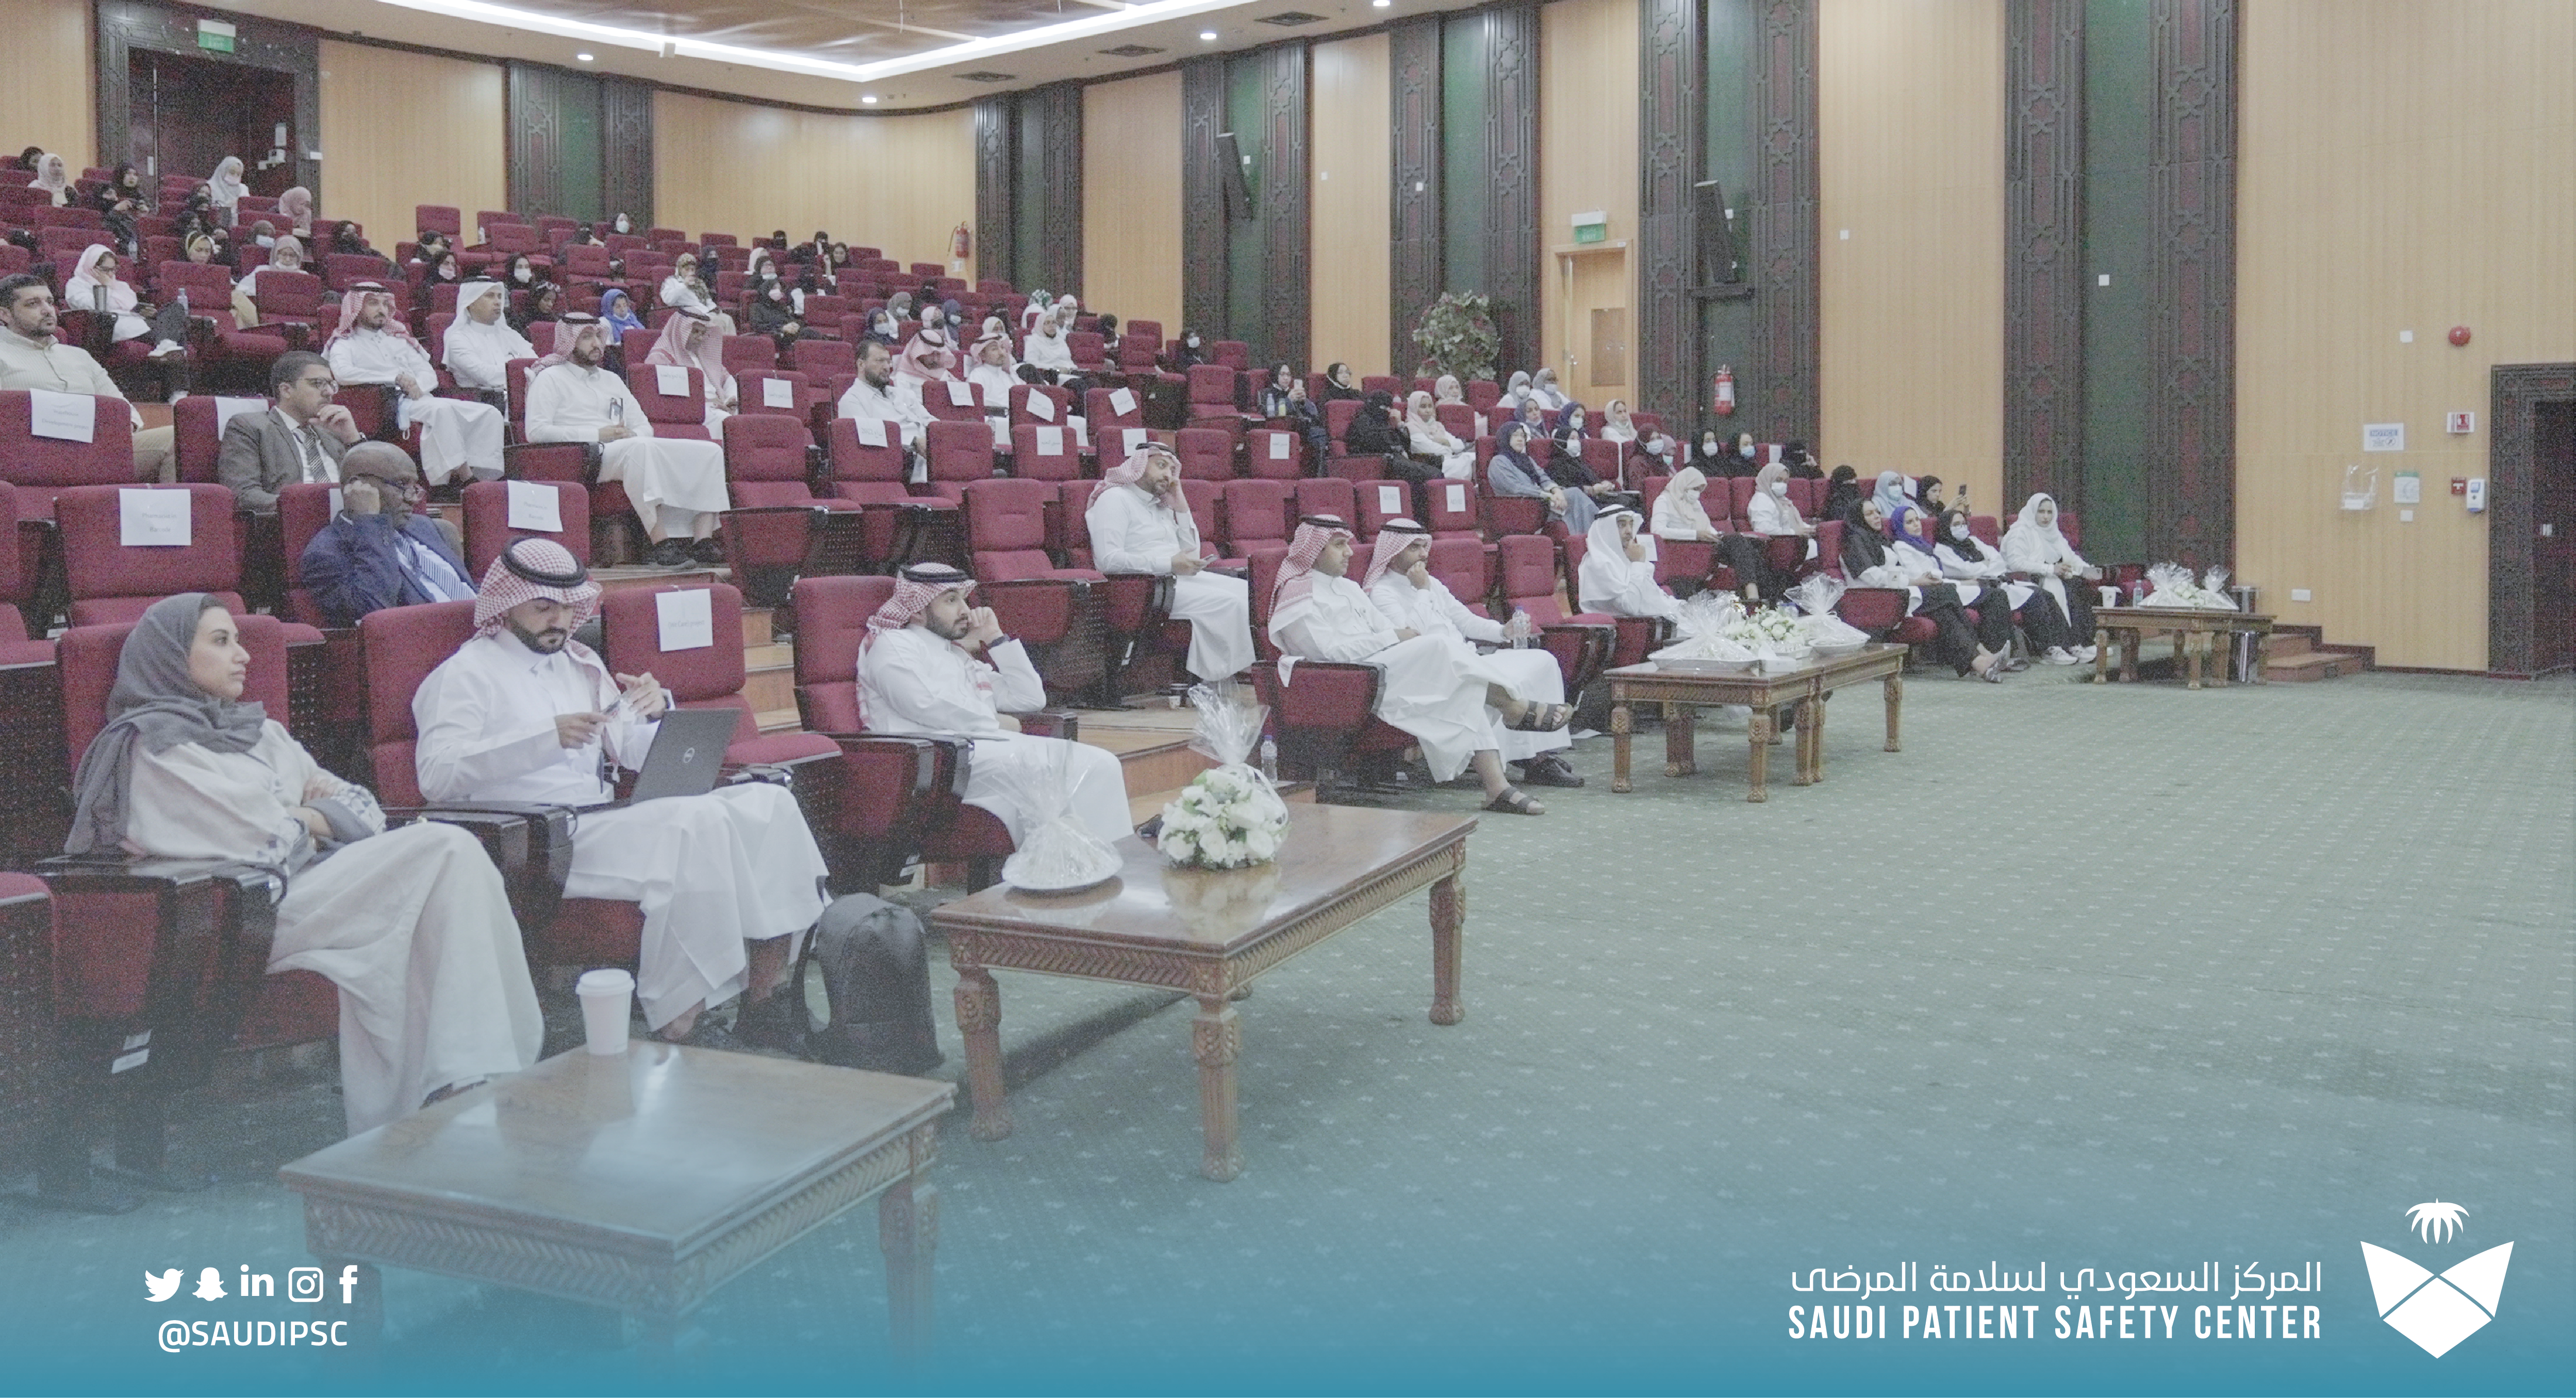 عقد المركز السعودي لسلامة المرضى ندوته الرابعة لثقافة سلامة المرضى في منطقة مكة المكرمة